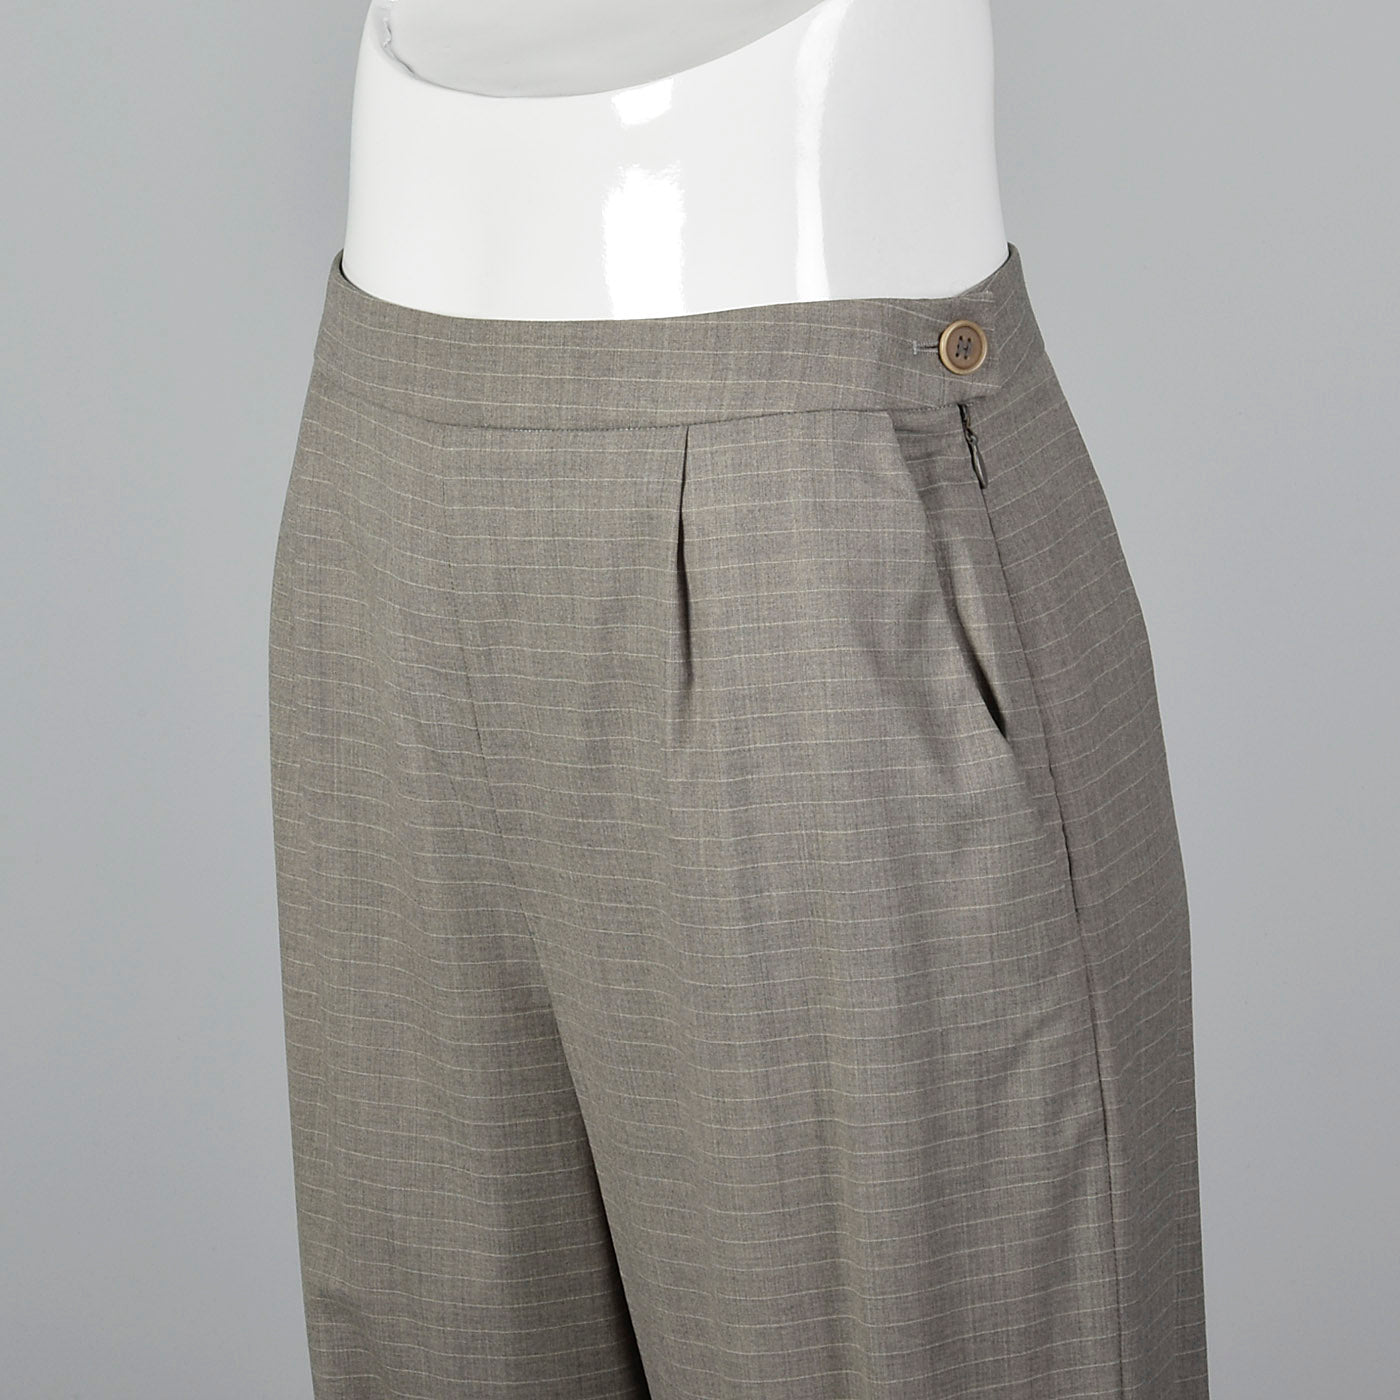 1990s Hermès Wool Pants in Heathered Gray